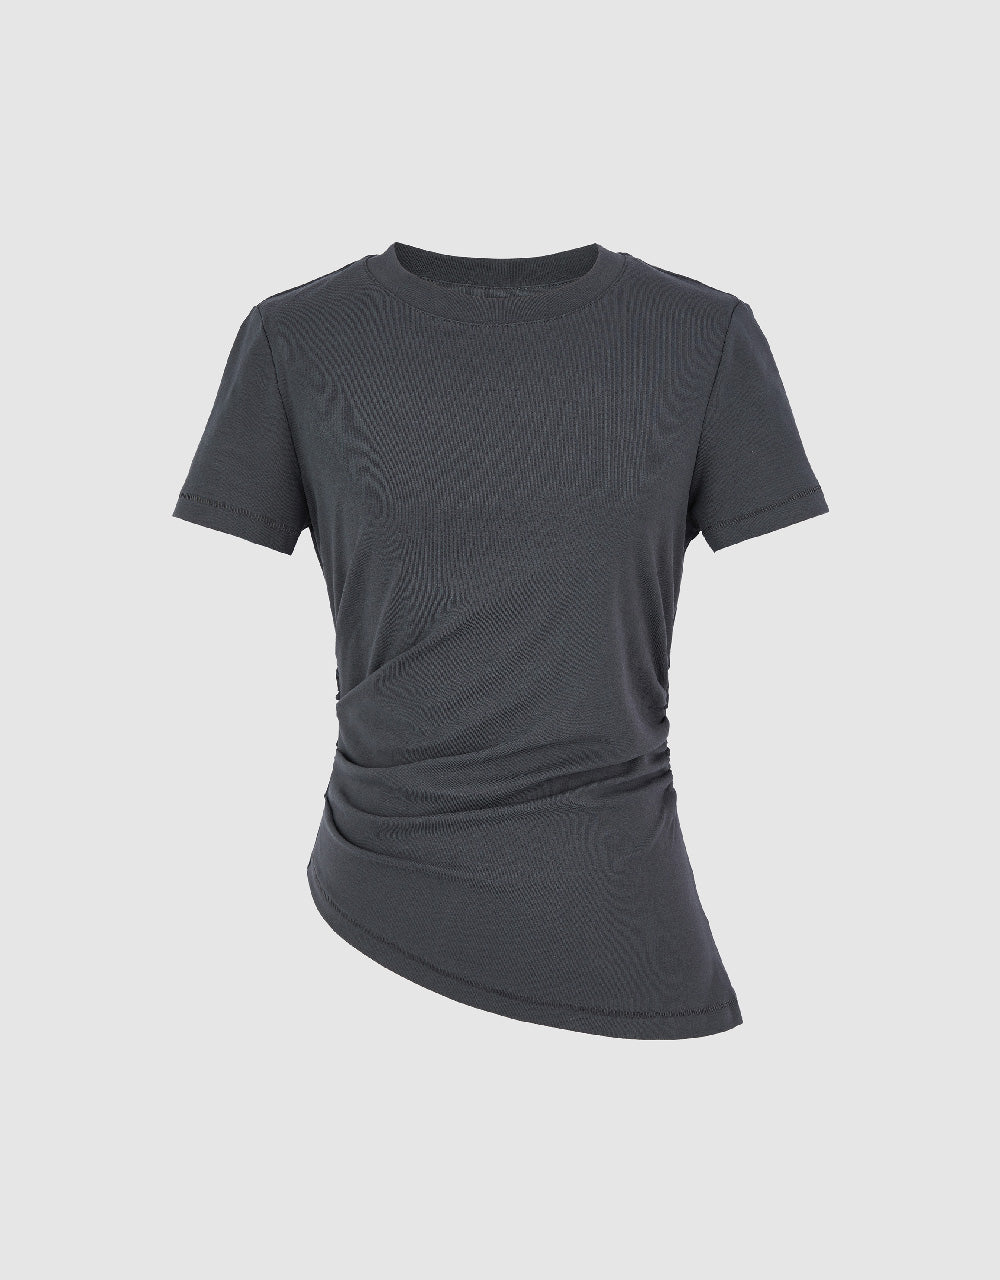 Asymmetric Ruched T-Shirt